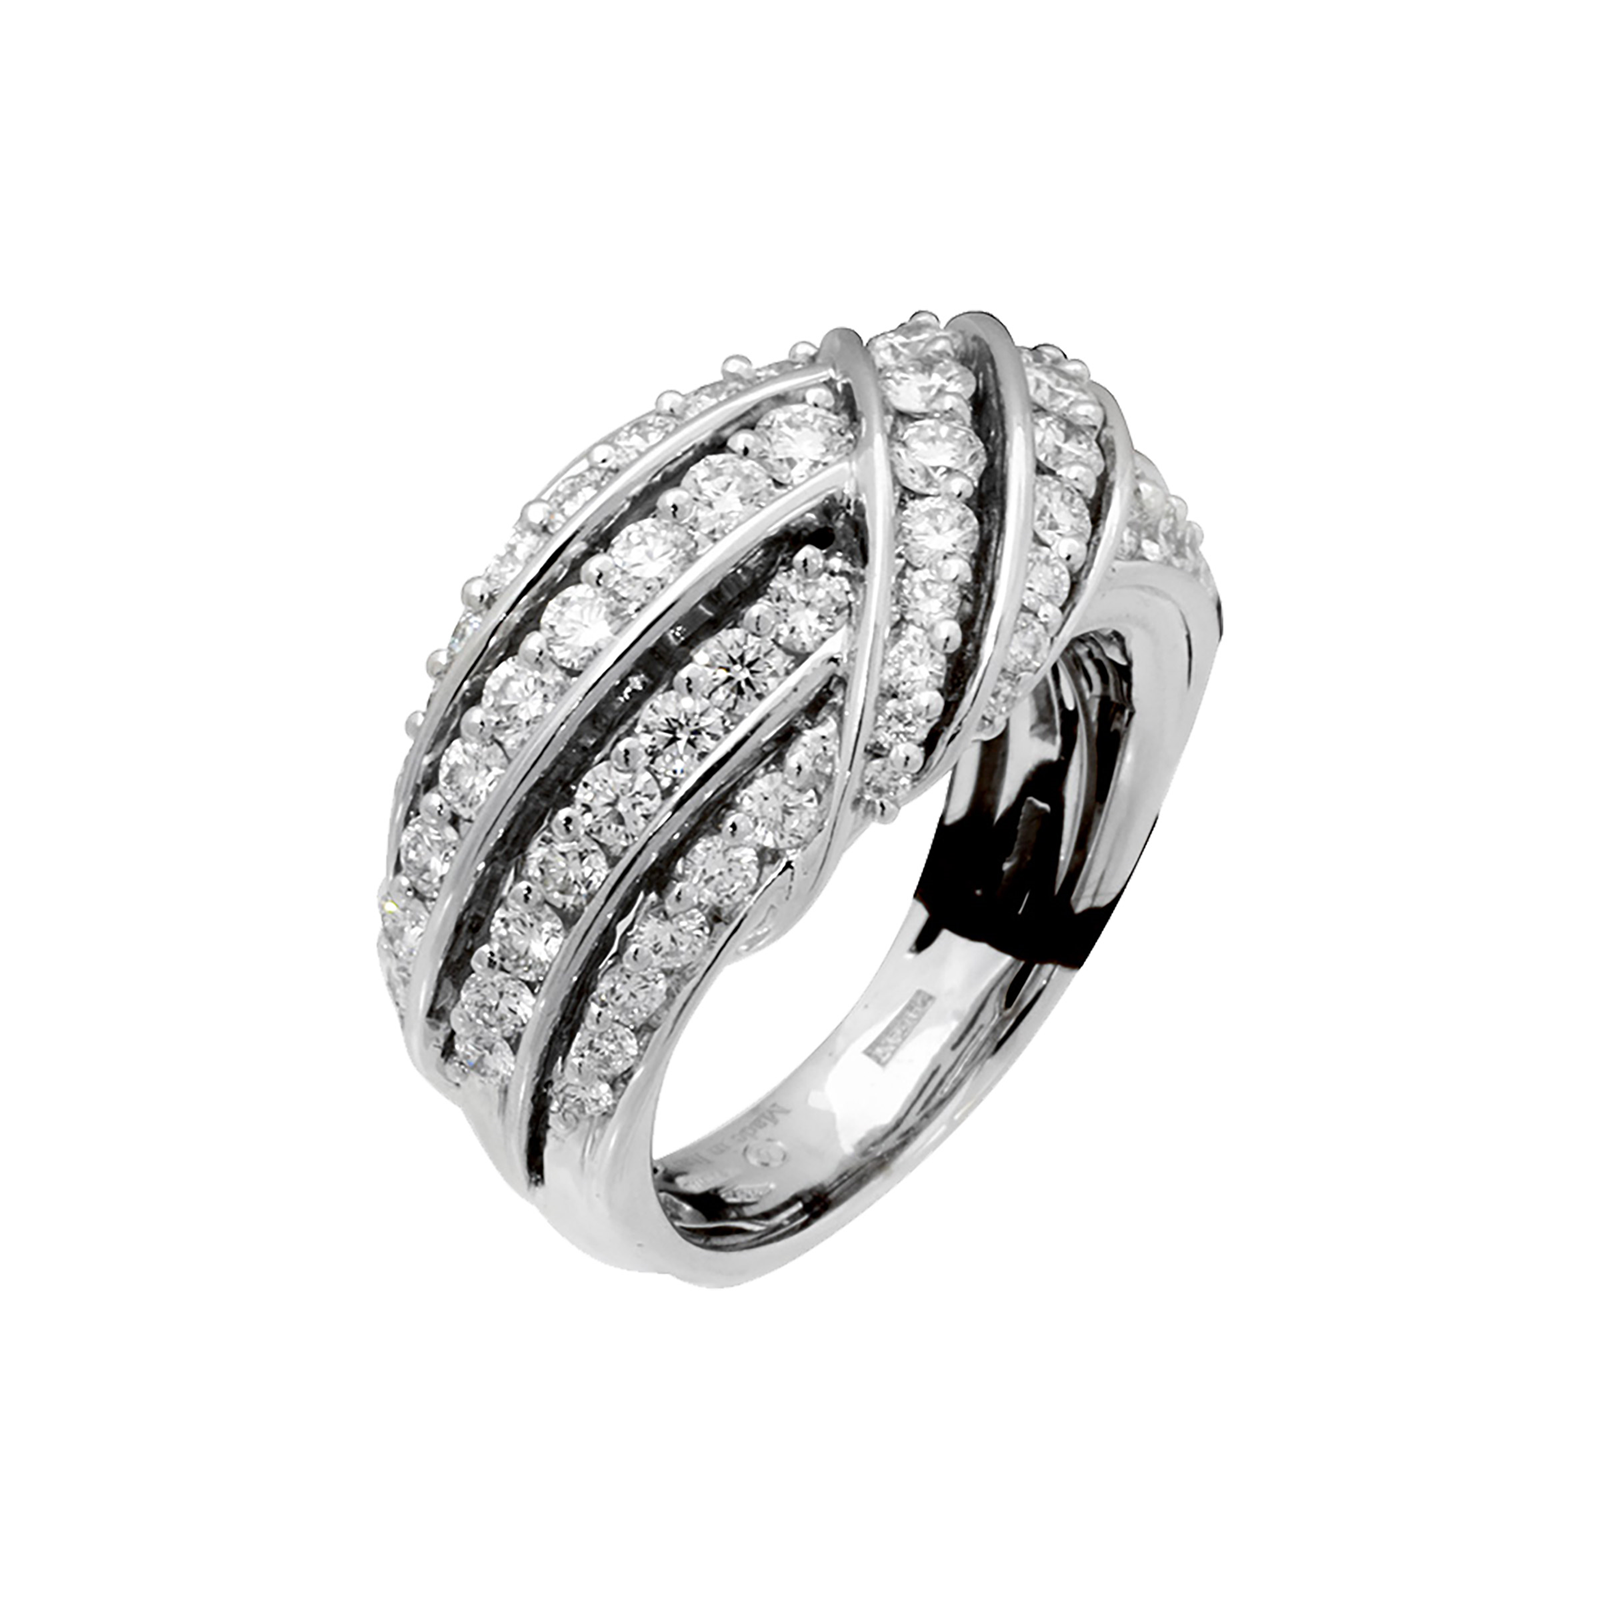 Damiani 18ct White Gold 1.95cttw Diamond Ring - Ring Size O | Rings ...